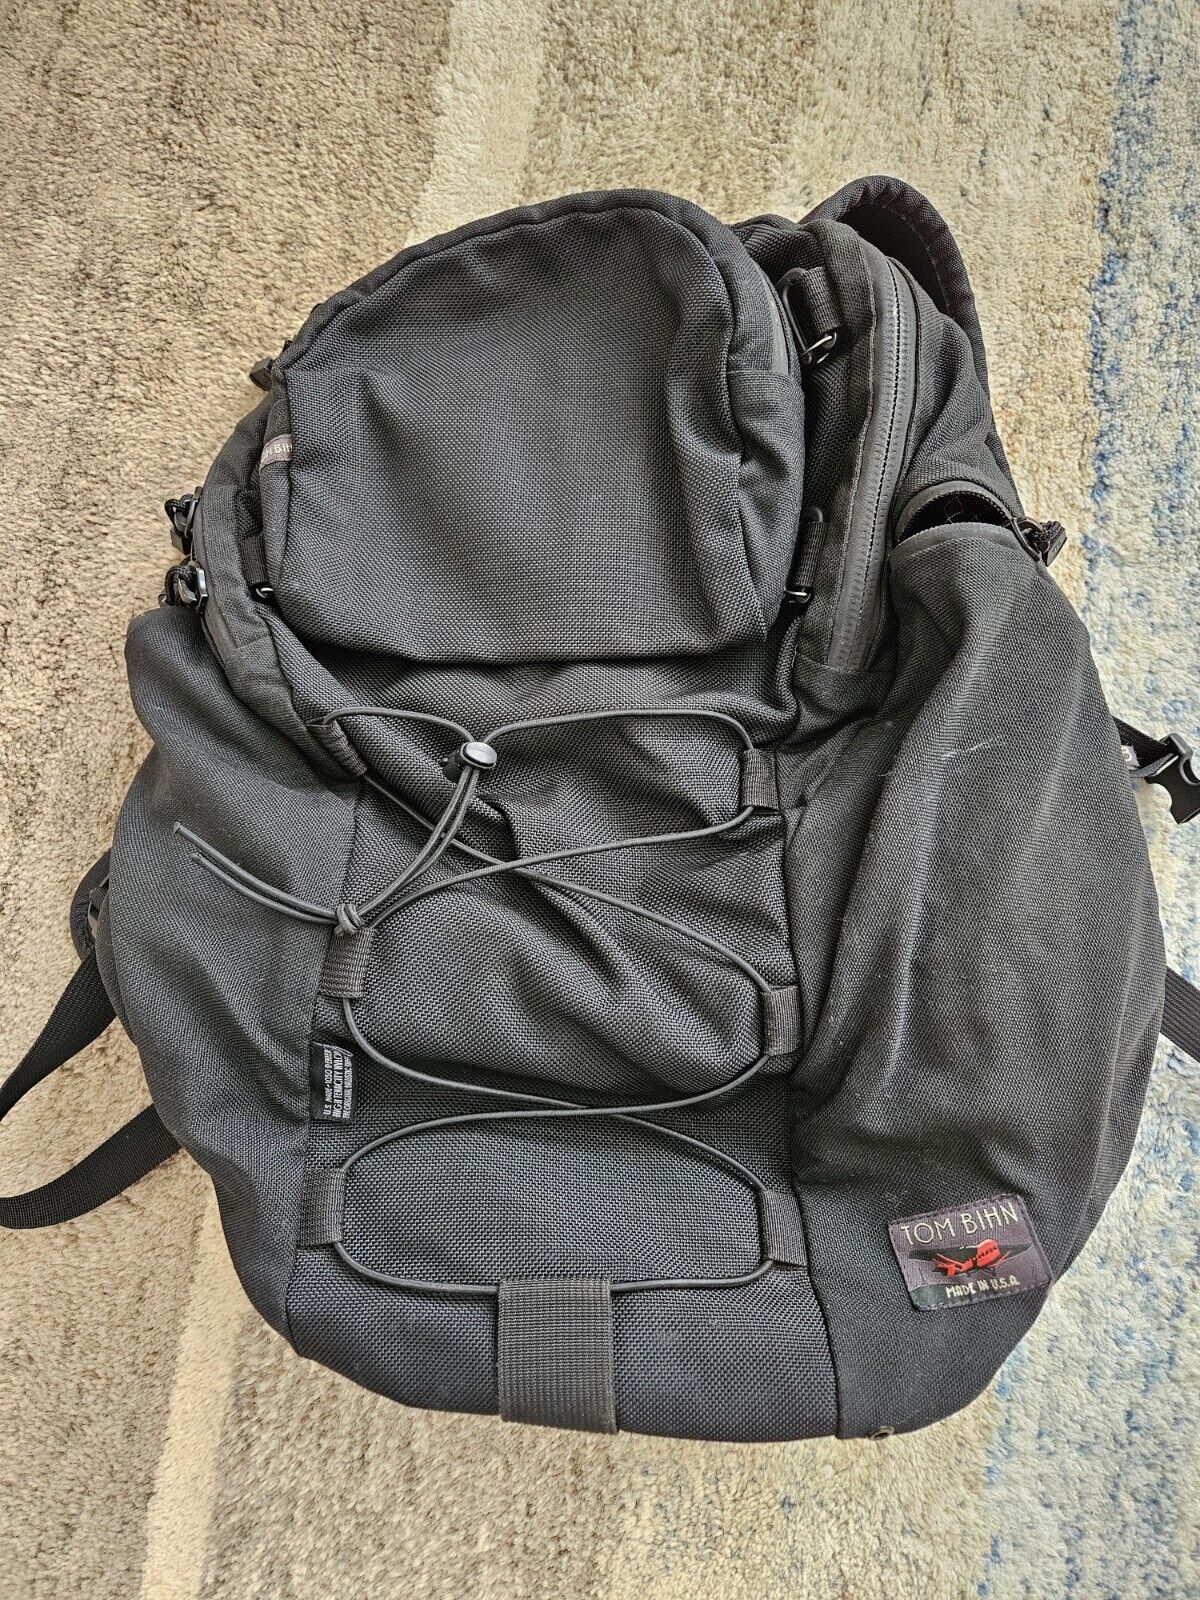 Tom Bihn Smart Alec backpack, black ext, gray int, with upper modular pocket